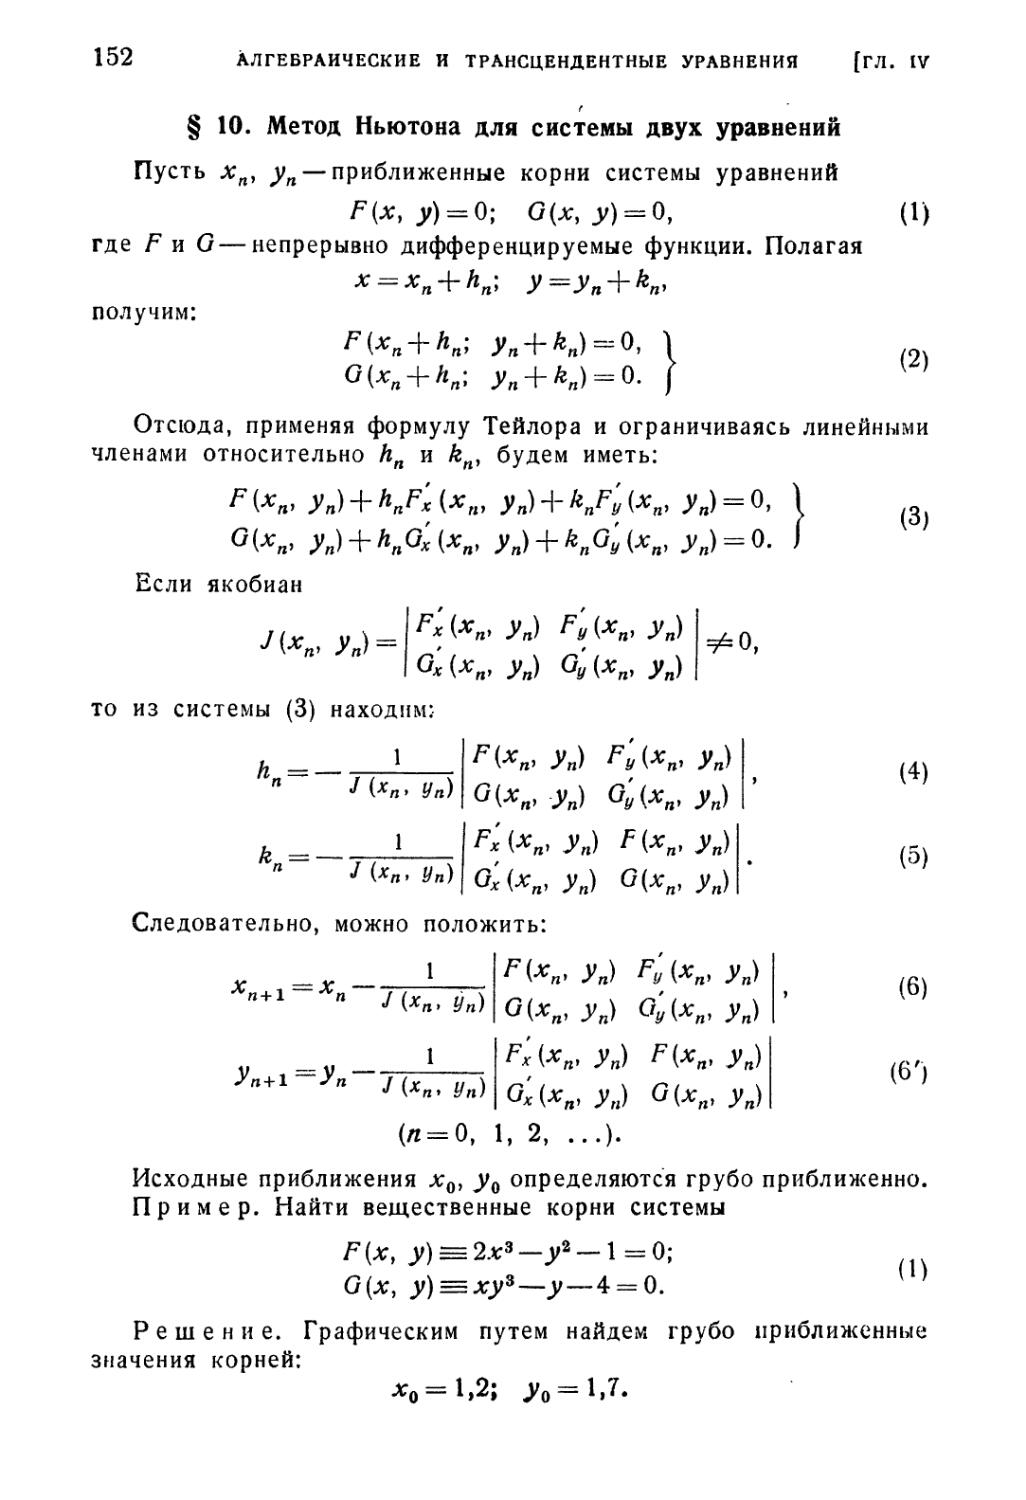 § 10. Метод Ньютона для системы двух уравнений